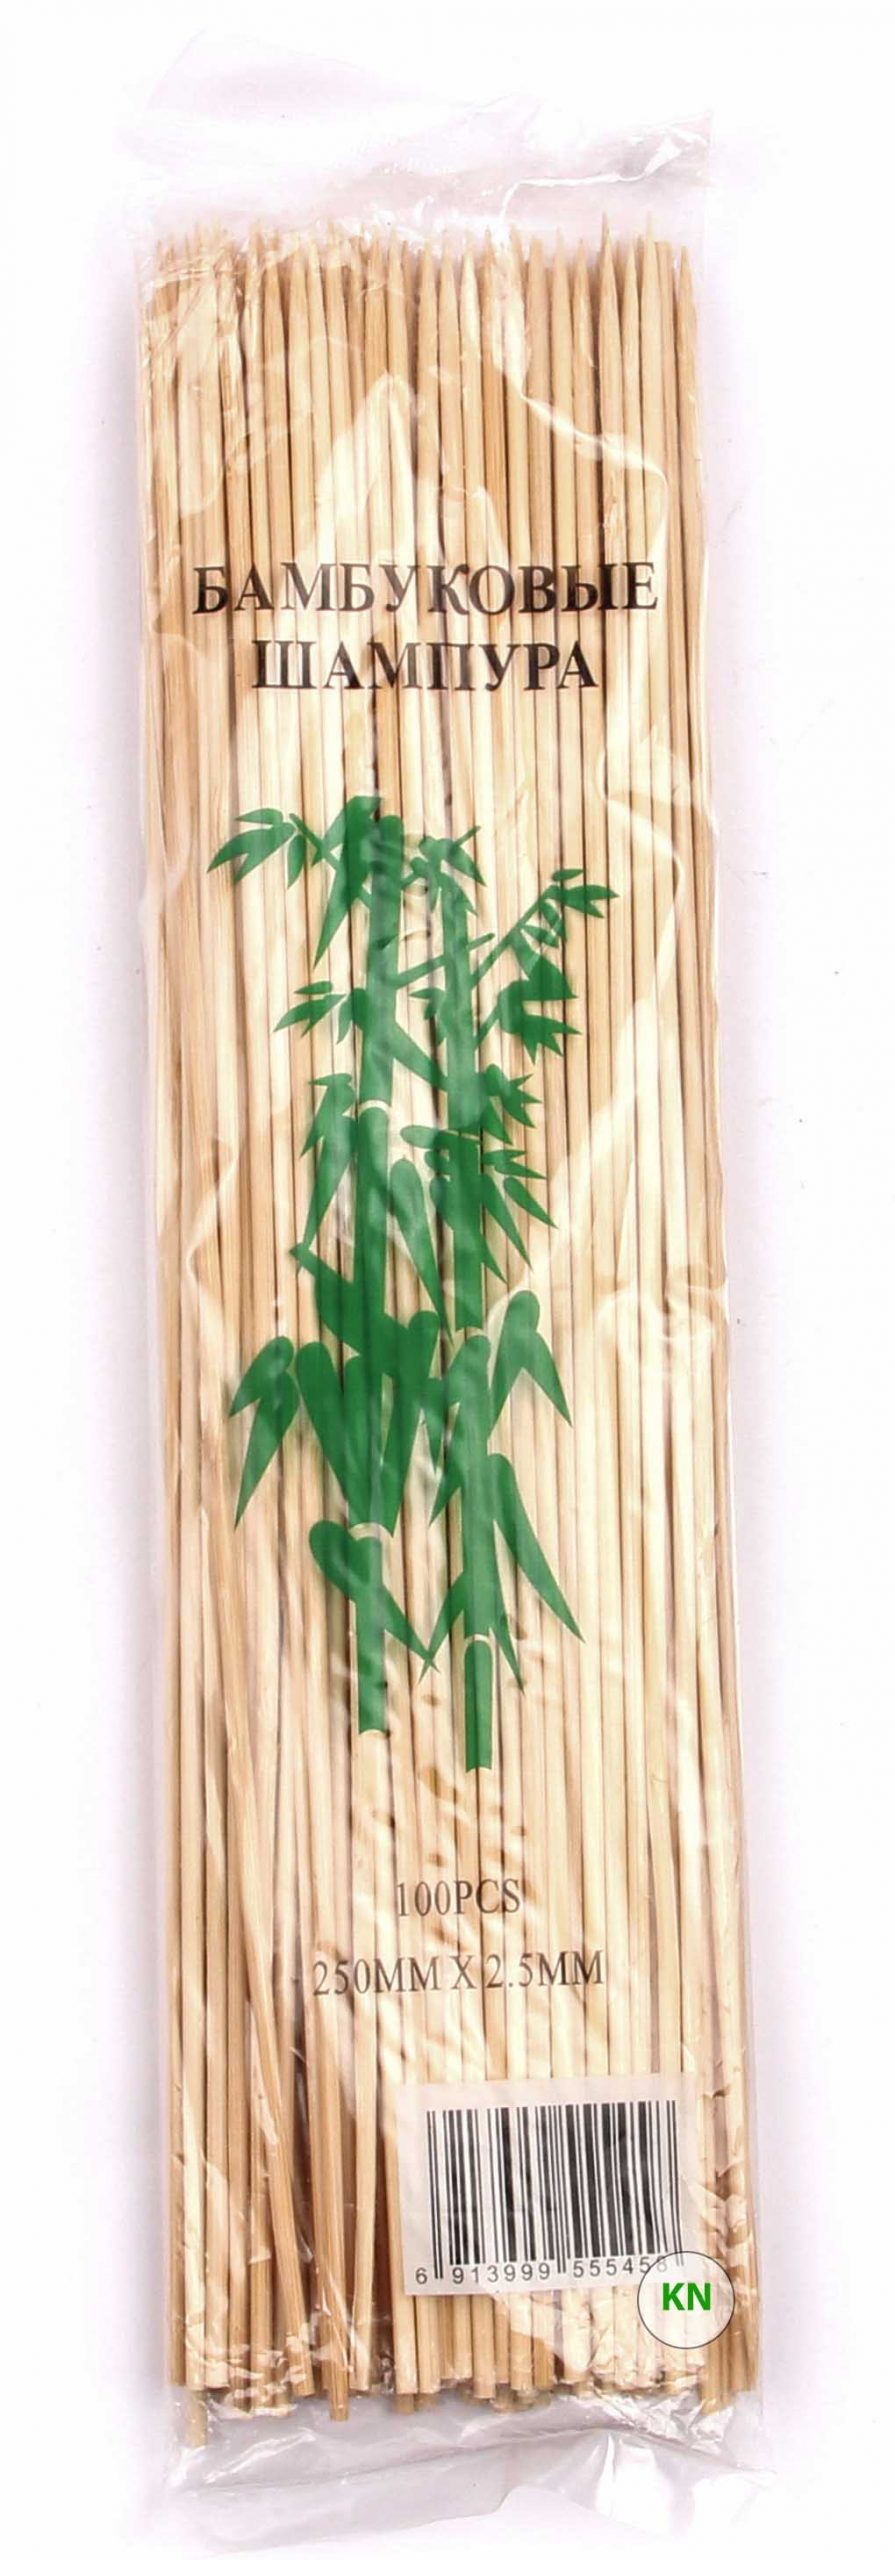 Шампури бамбукові (2,5 мм, 25 см)